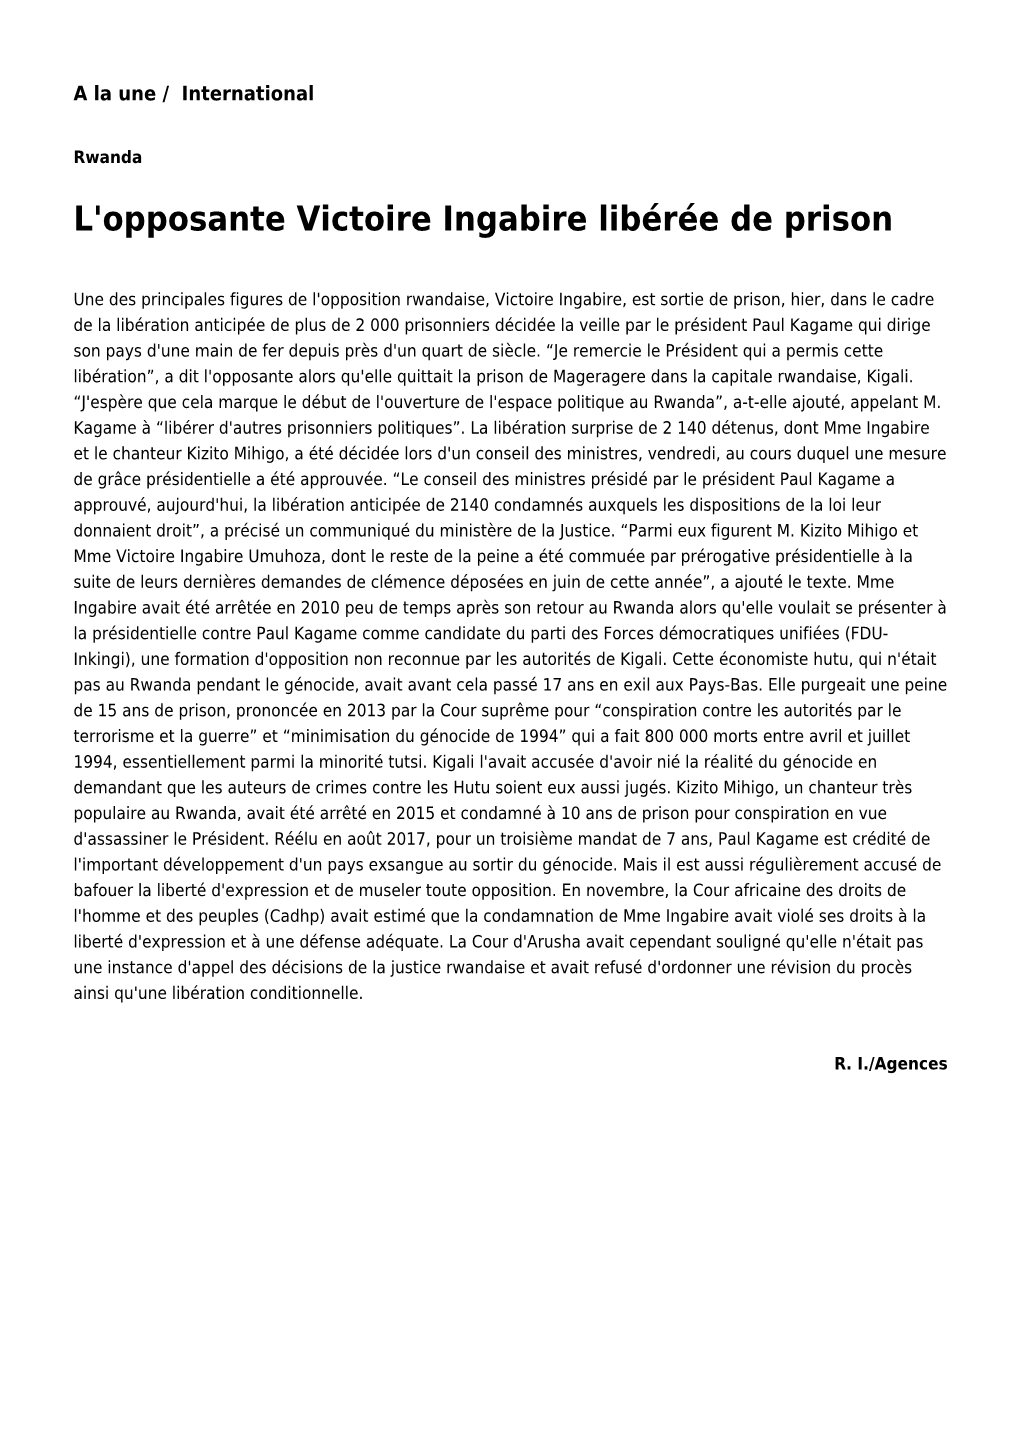 L'opposante Victoire Ingabire Libérée De Prison